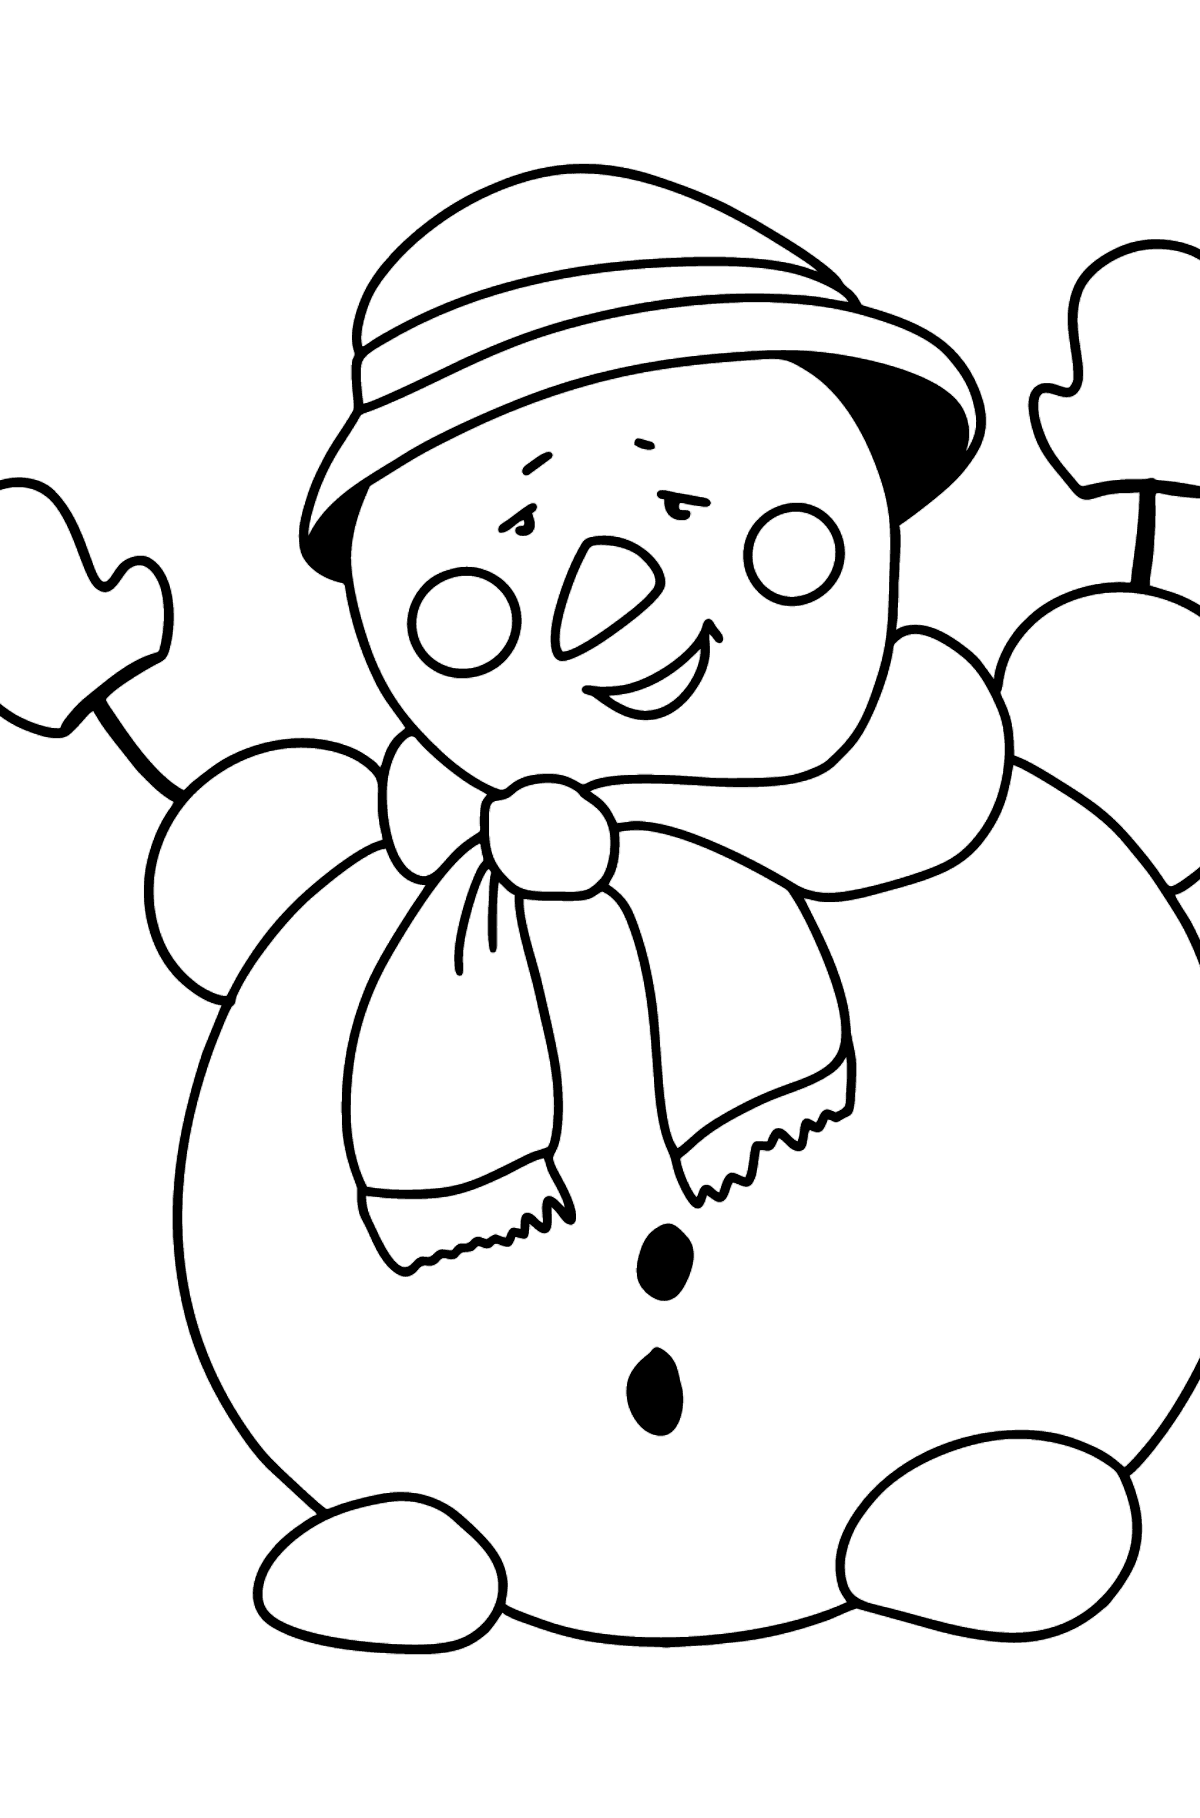 Boyama sayfası mutlu kardan adam - Boyamalar çocuklar için